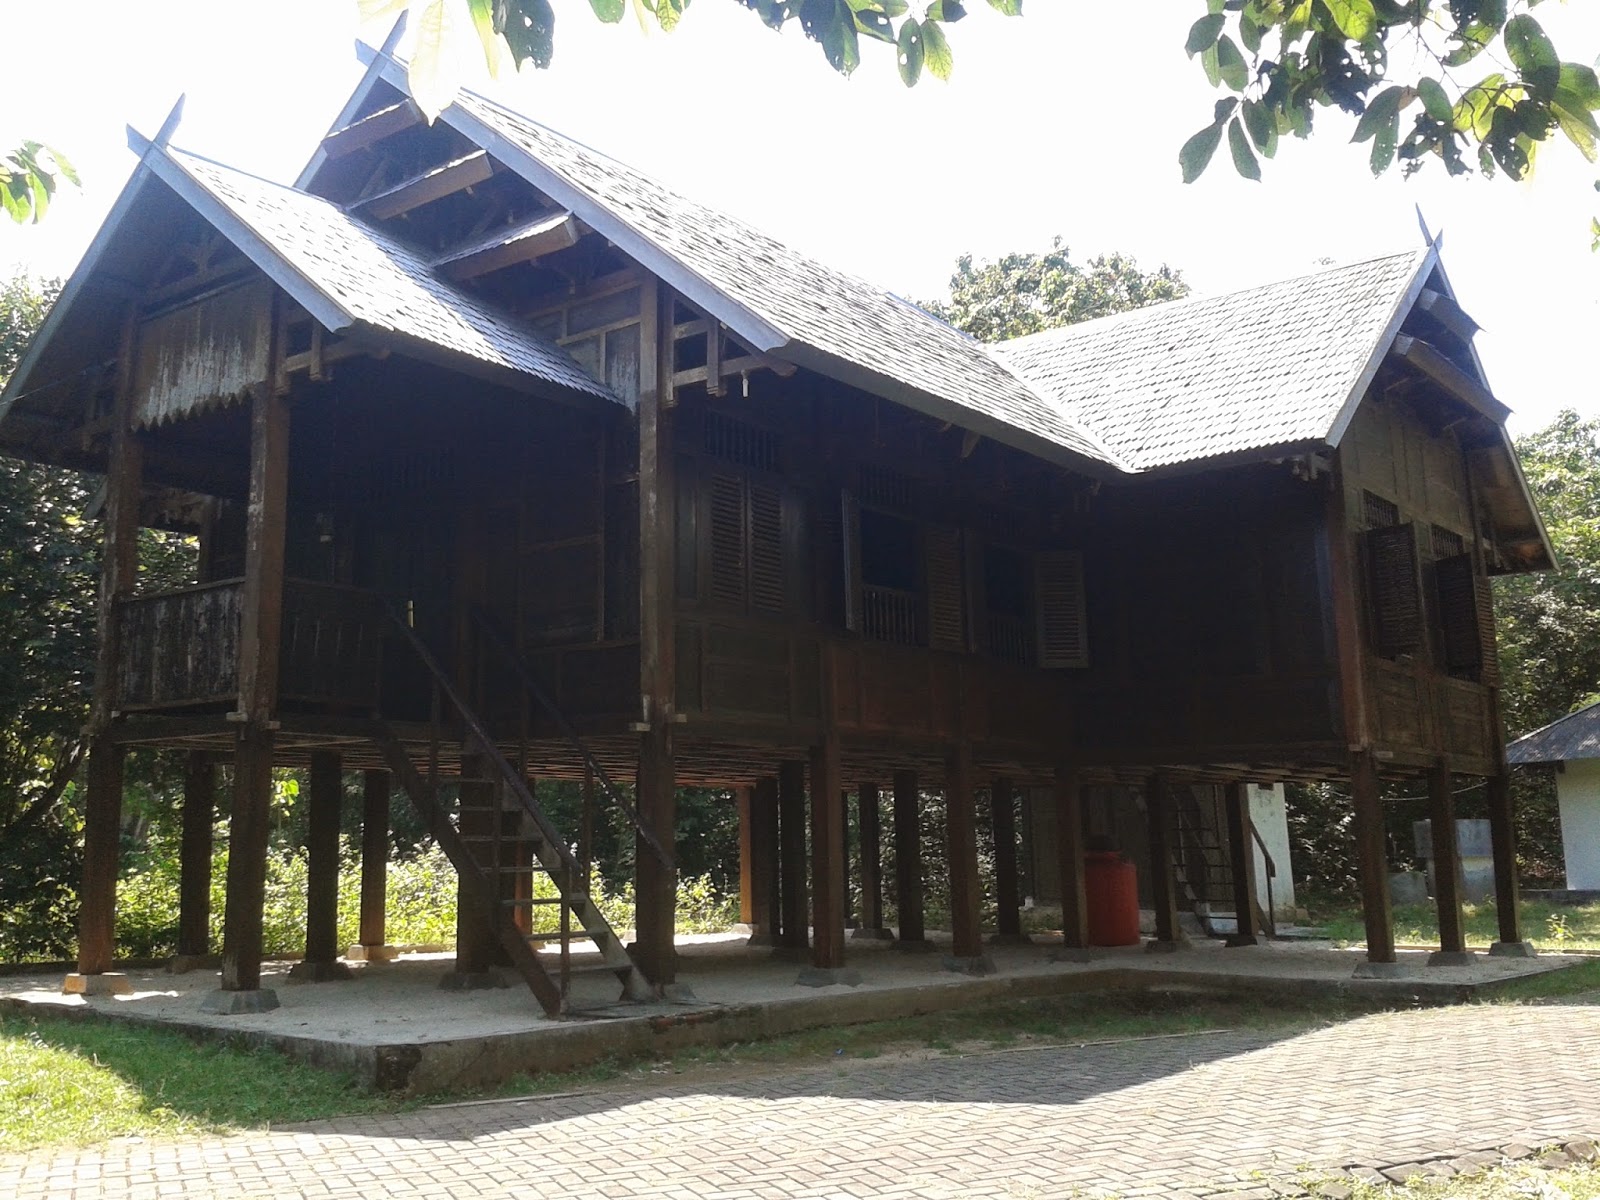 Rumah adat Bugis & Jawa di Kemujan, Karimunjawa